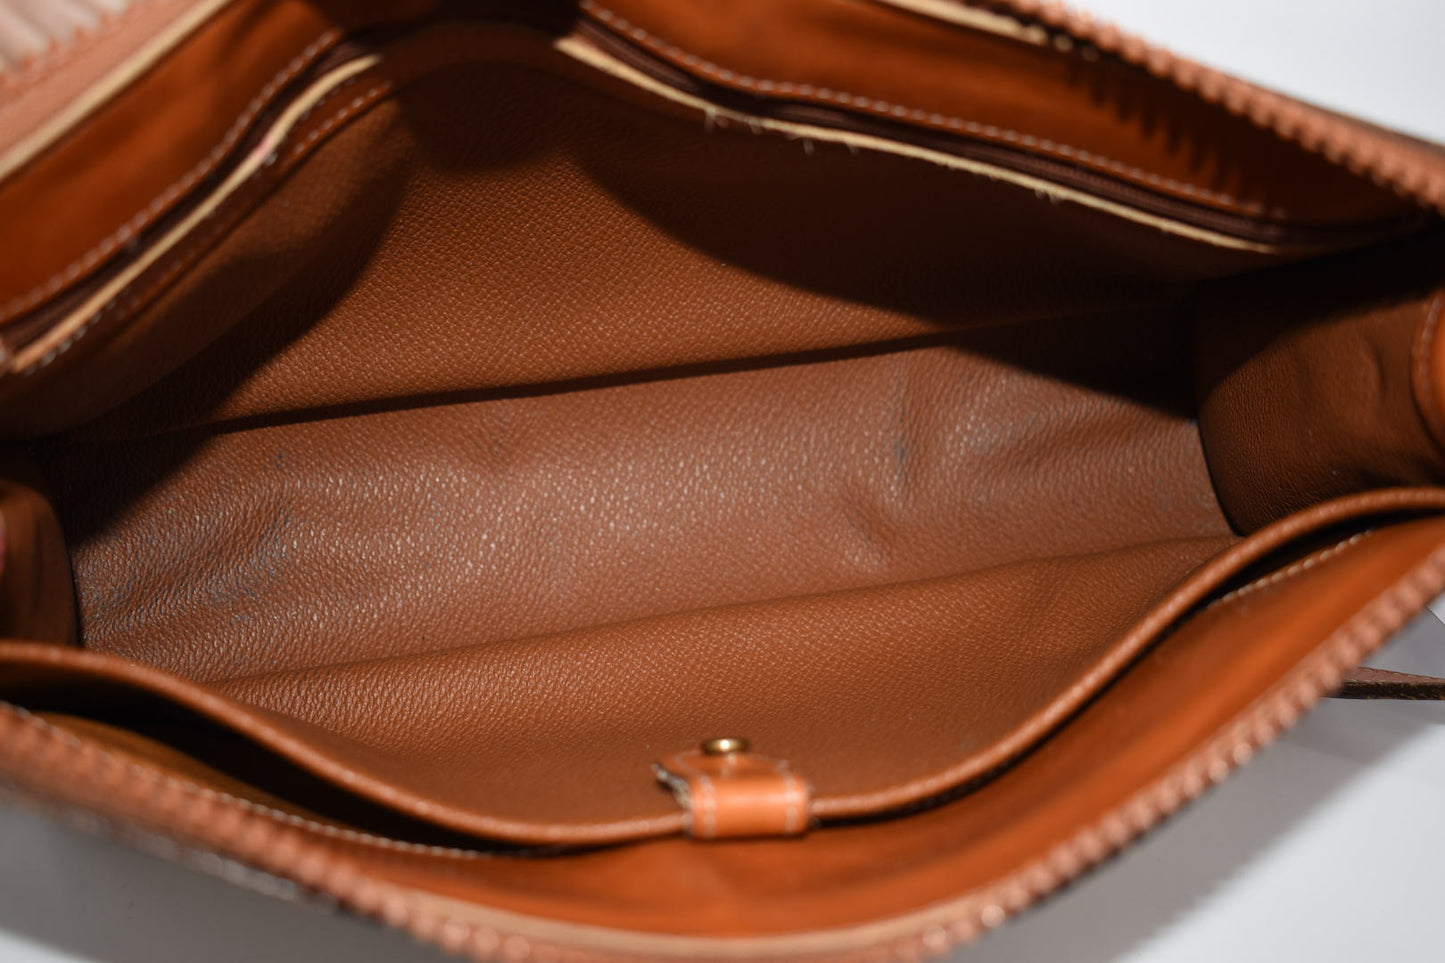 Vintage Dooney & Bourke All Weather Leather Shoulder Bag